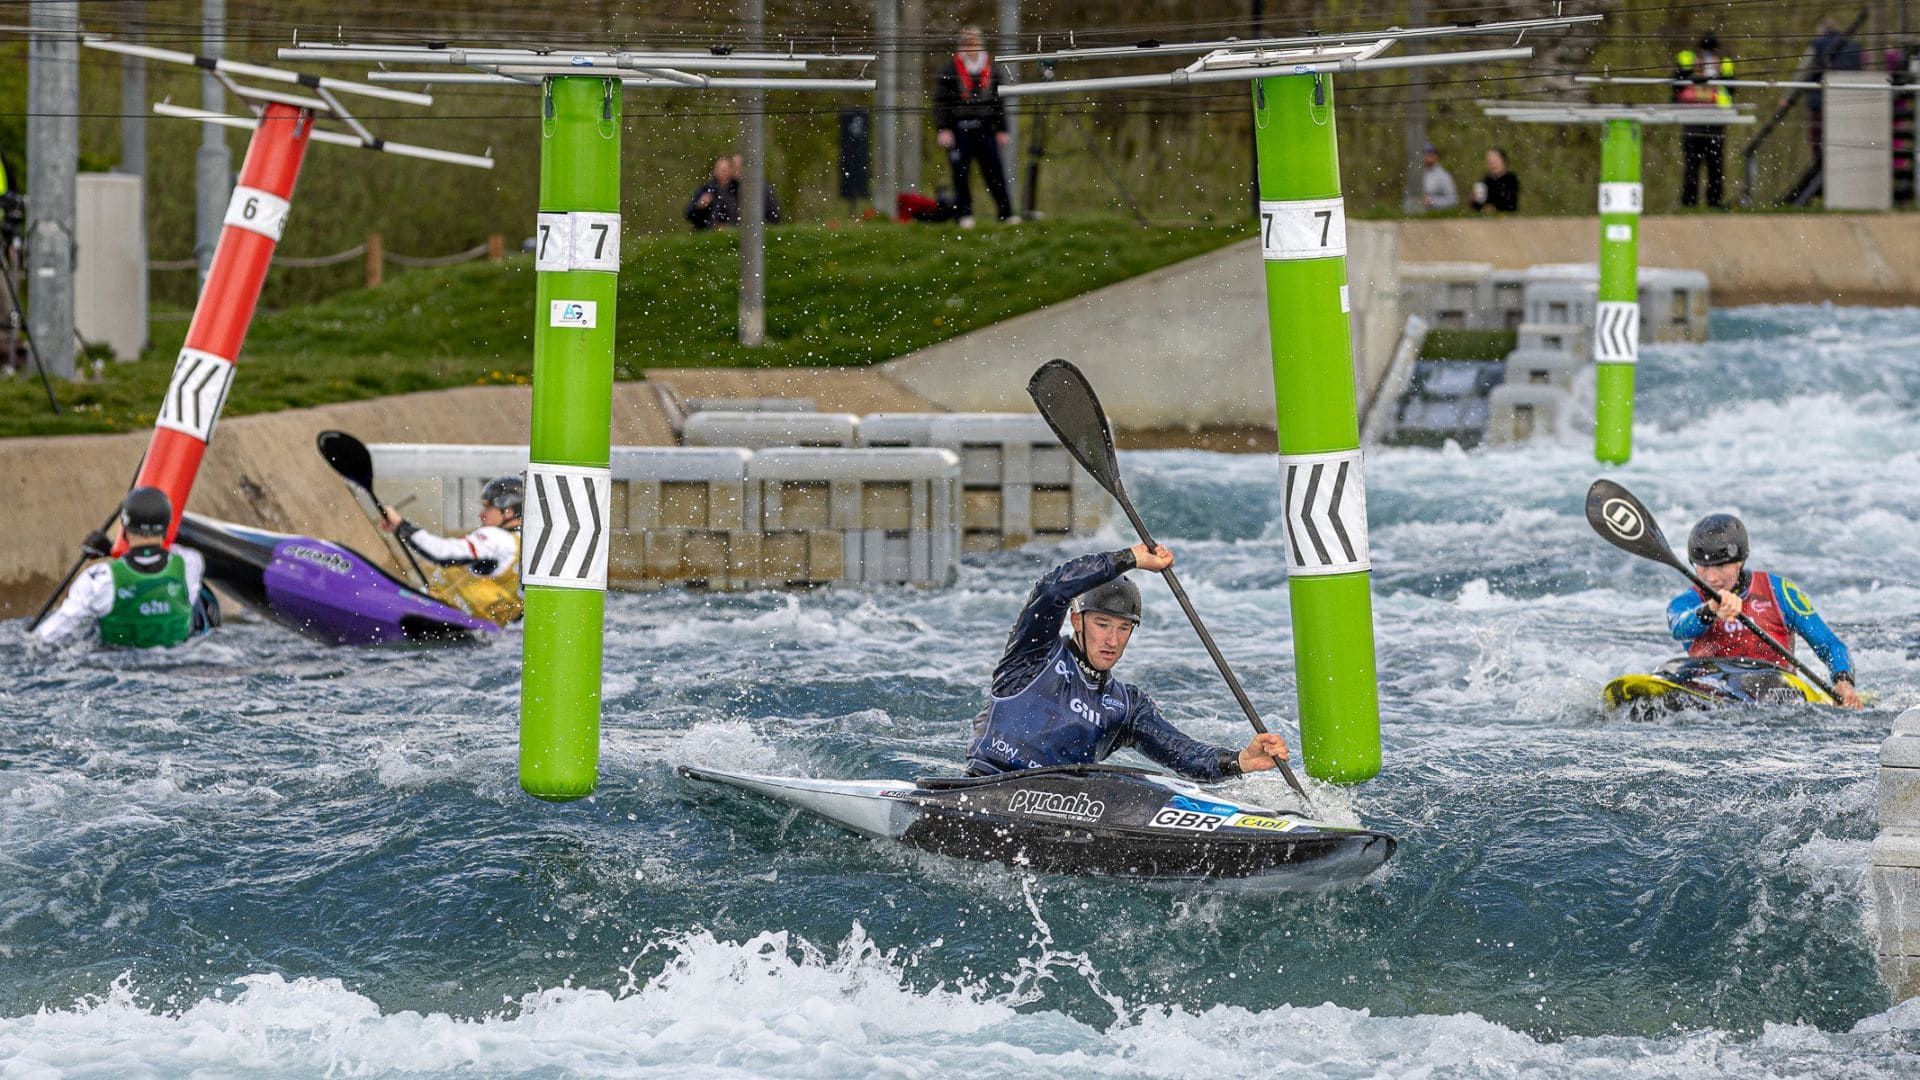 Athletes competing at kayak cross